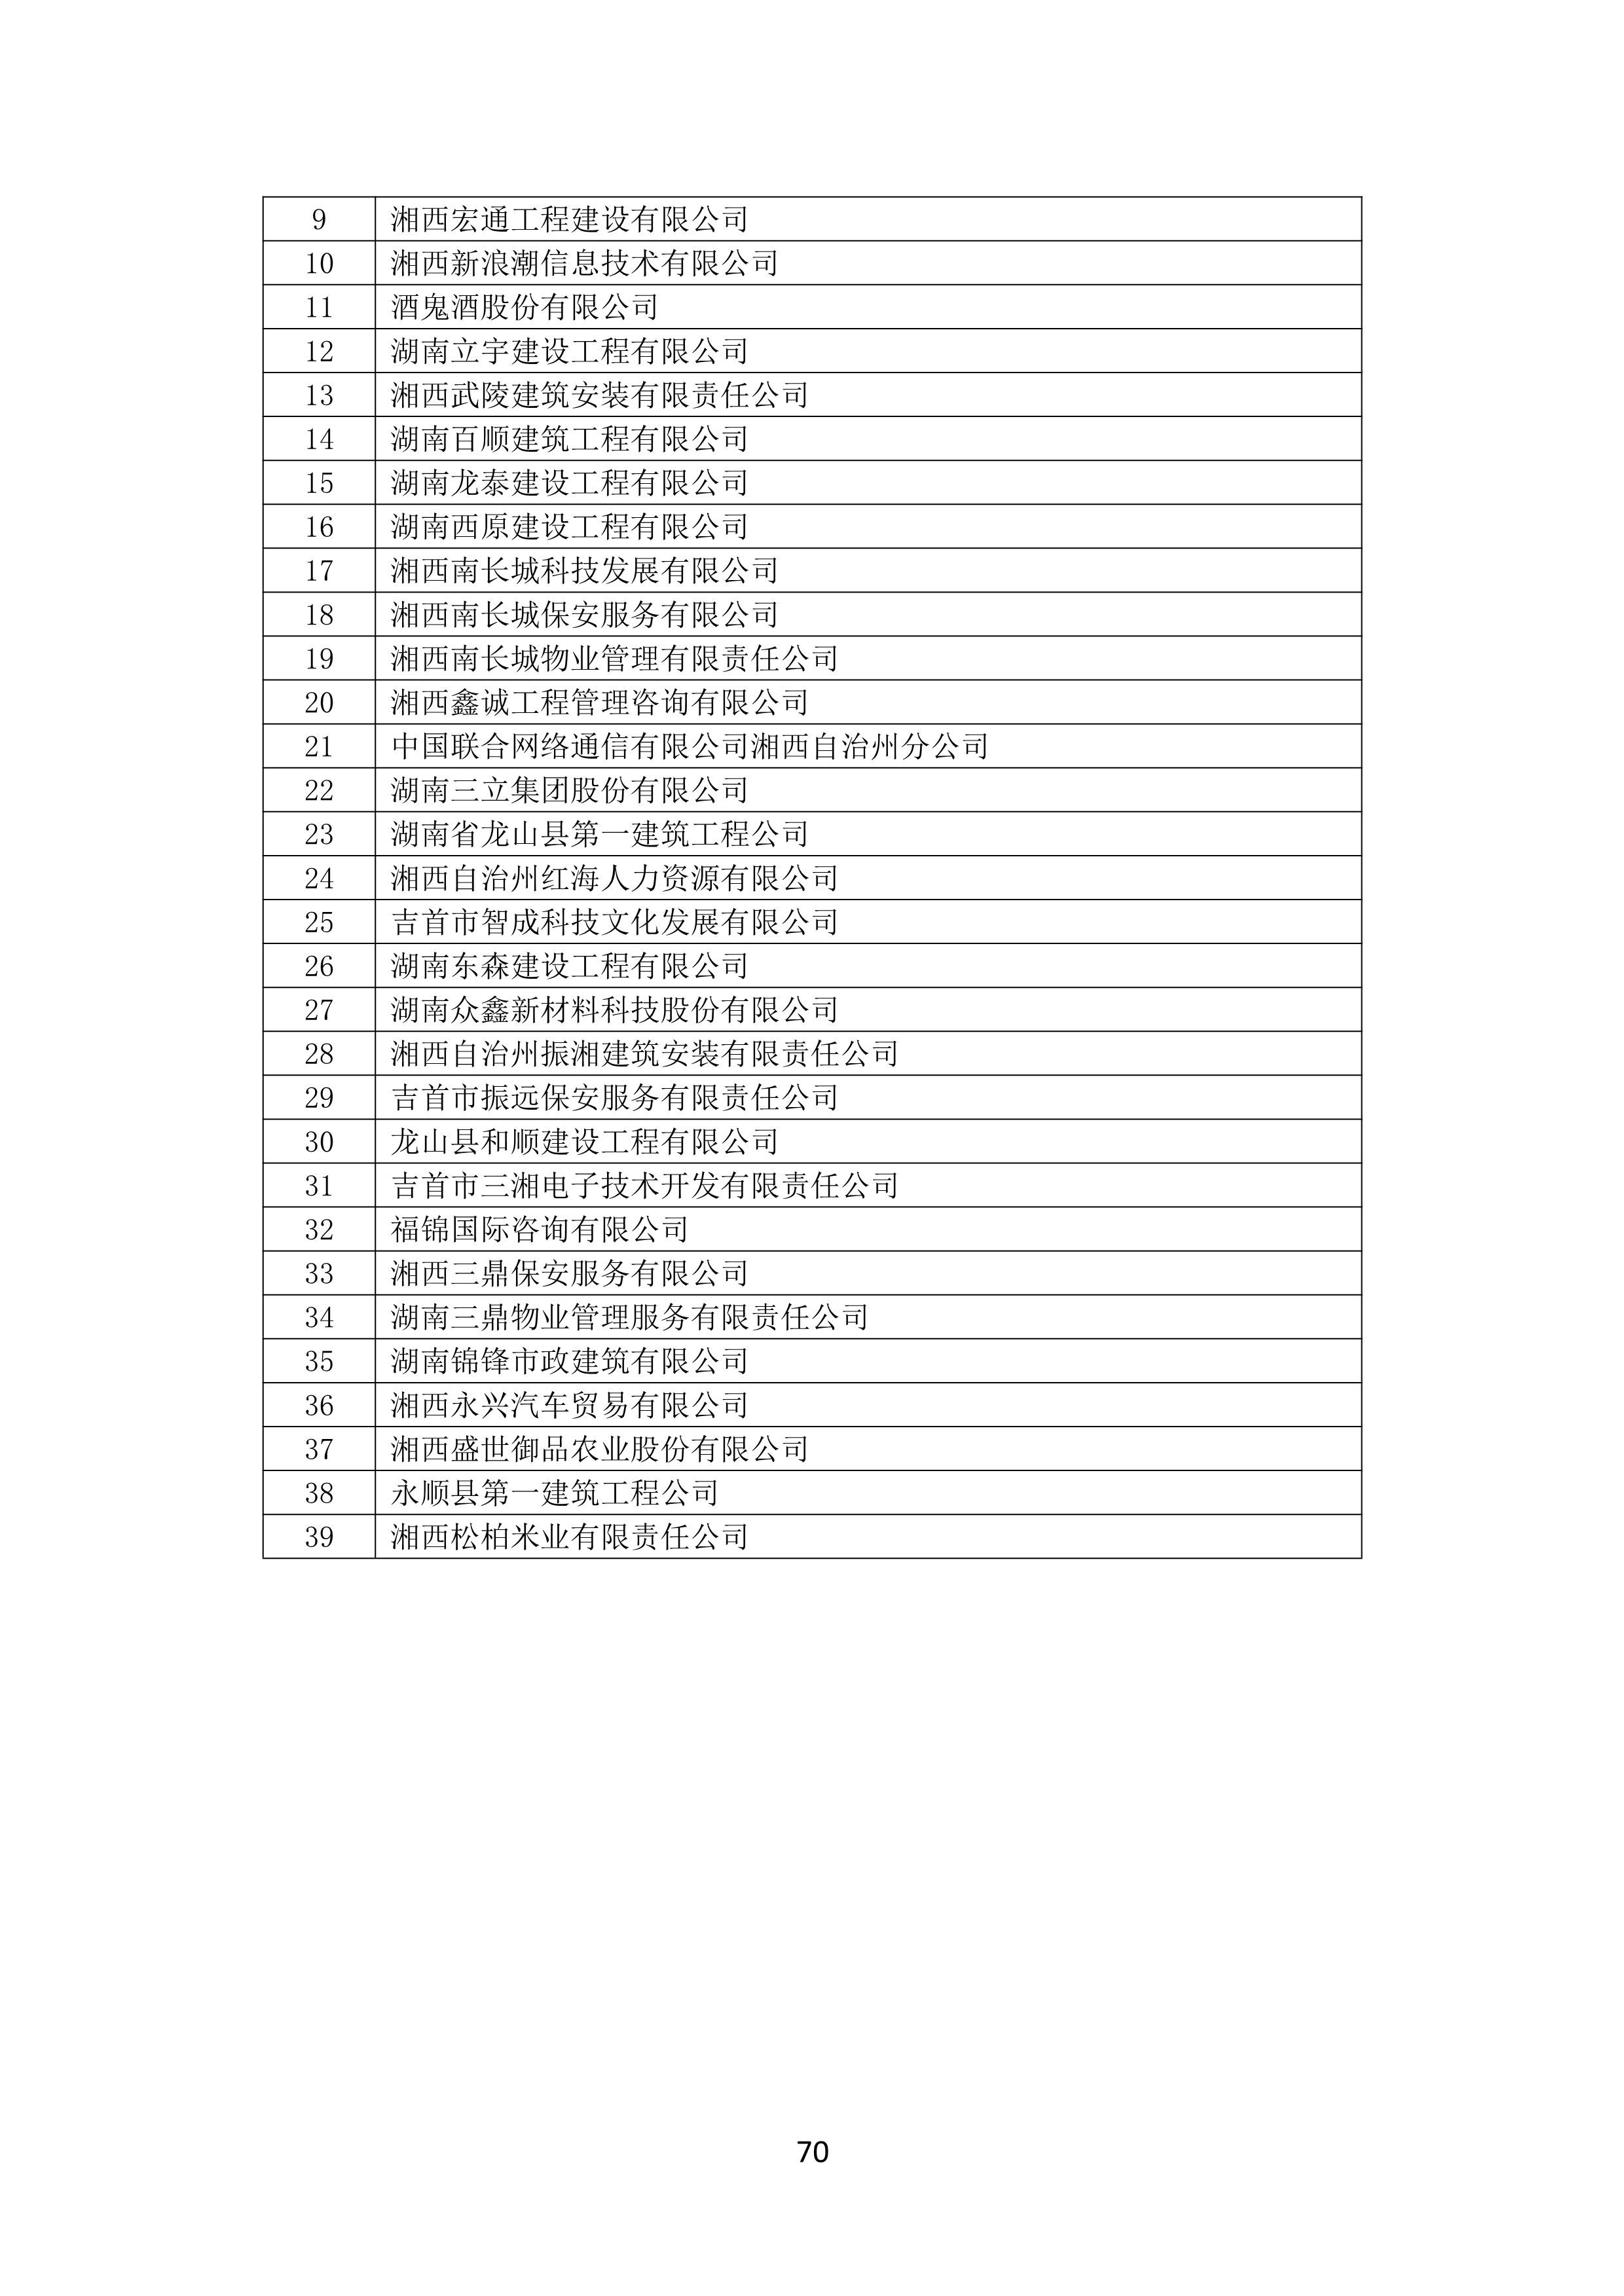 2021 年(nián)度湖南省守合同重信用企業名單_71.png